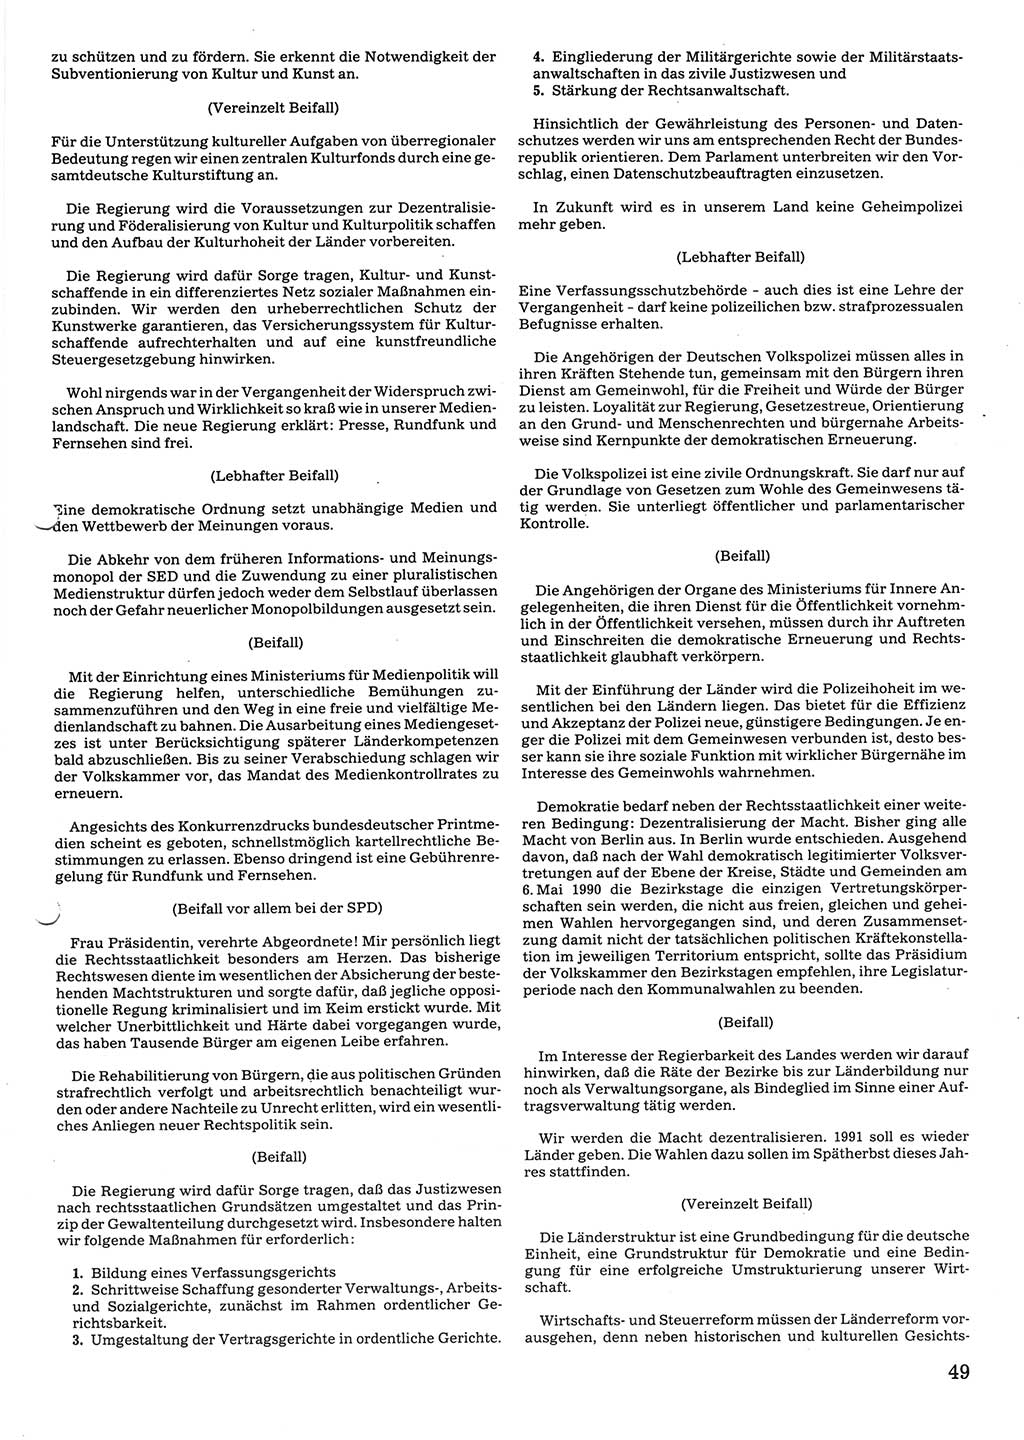 Tagungen der Volkskammer (VK) der Deutschen Demokratischen Republik (DDR), 10. Wahlperiode 1990, Seite 49 (VK. DDR 10. WP. 1990, Prot. Tg. 1-38, 5.4.-2.10.1990, S. 49)